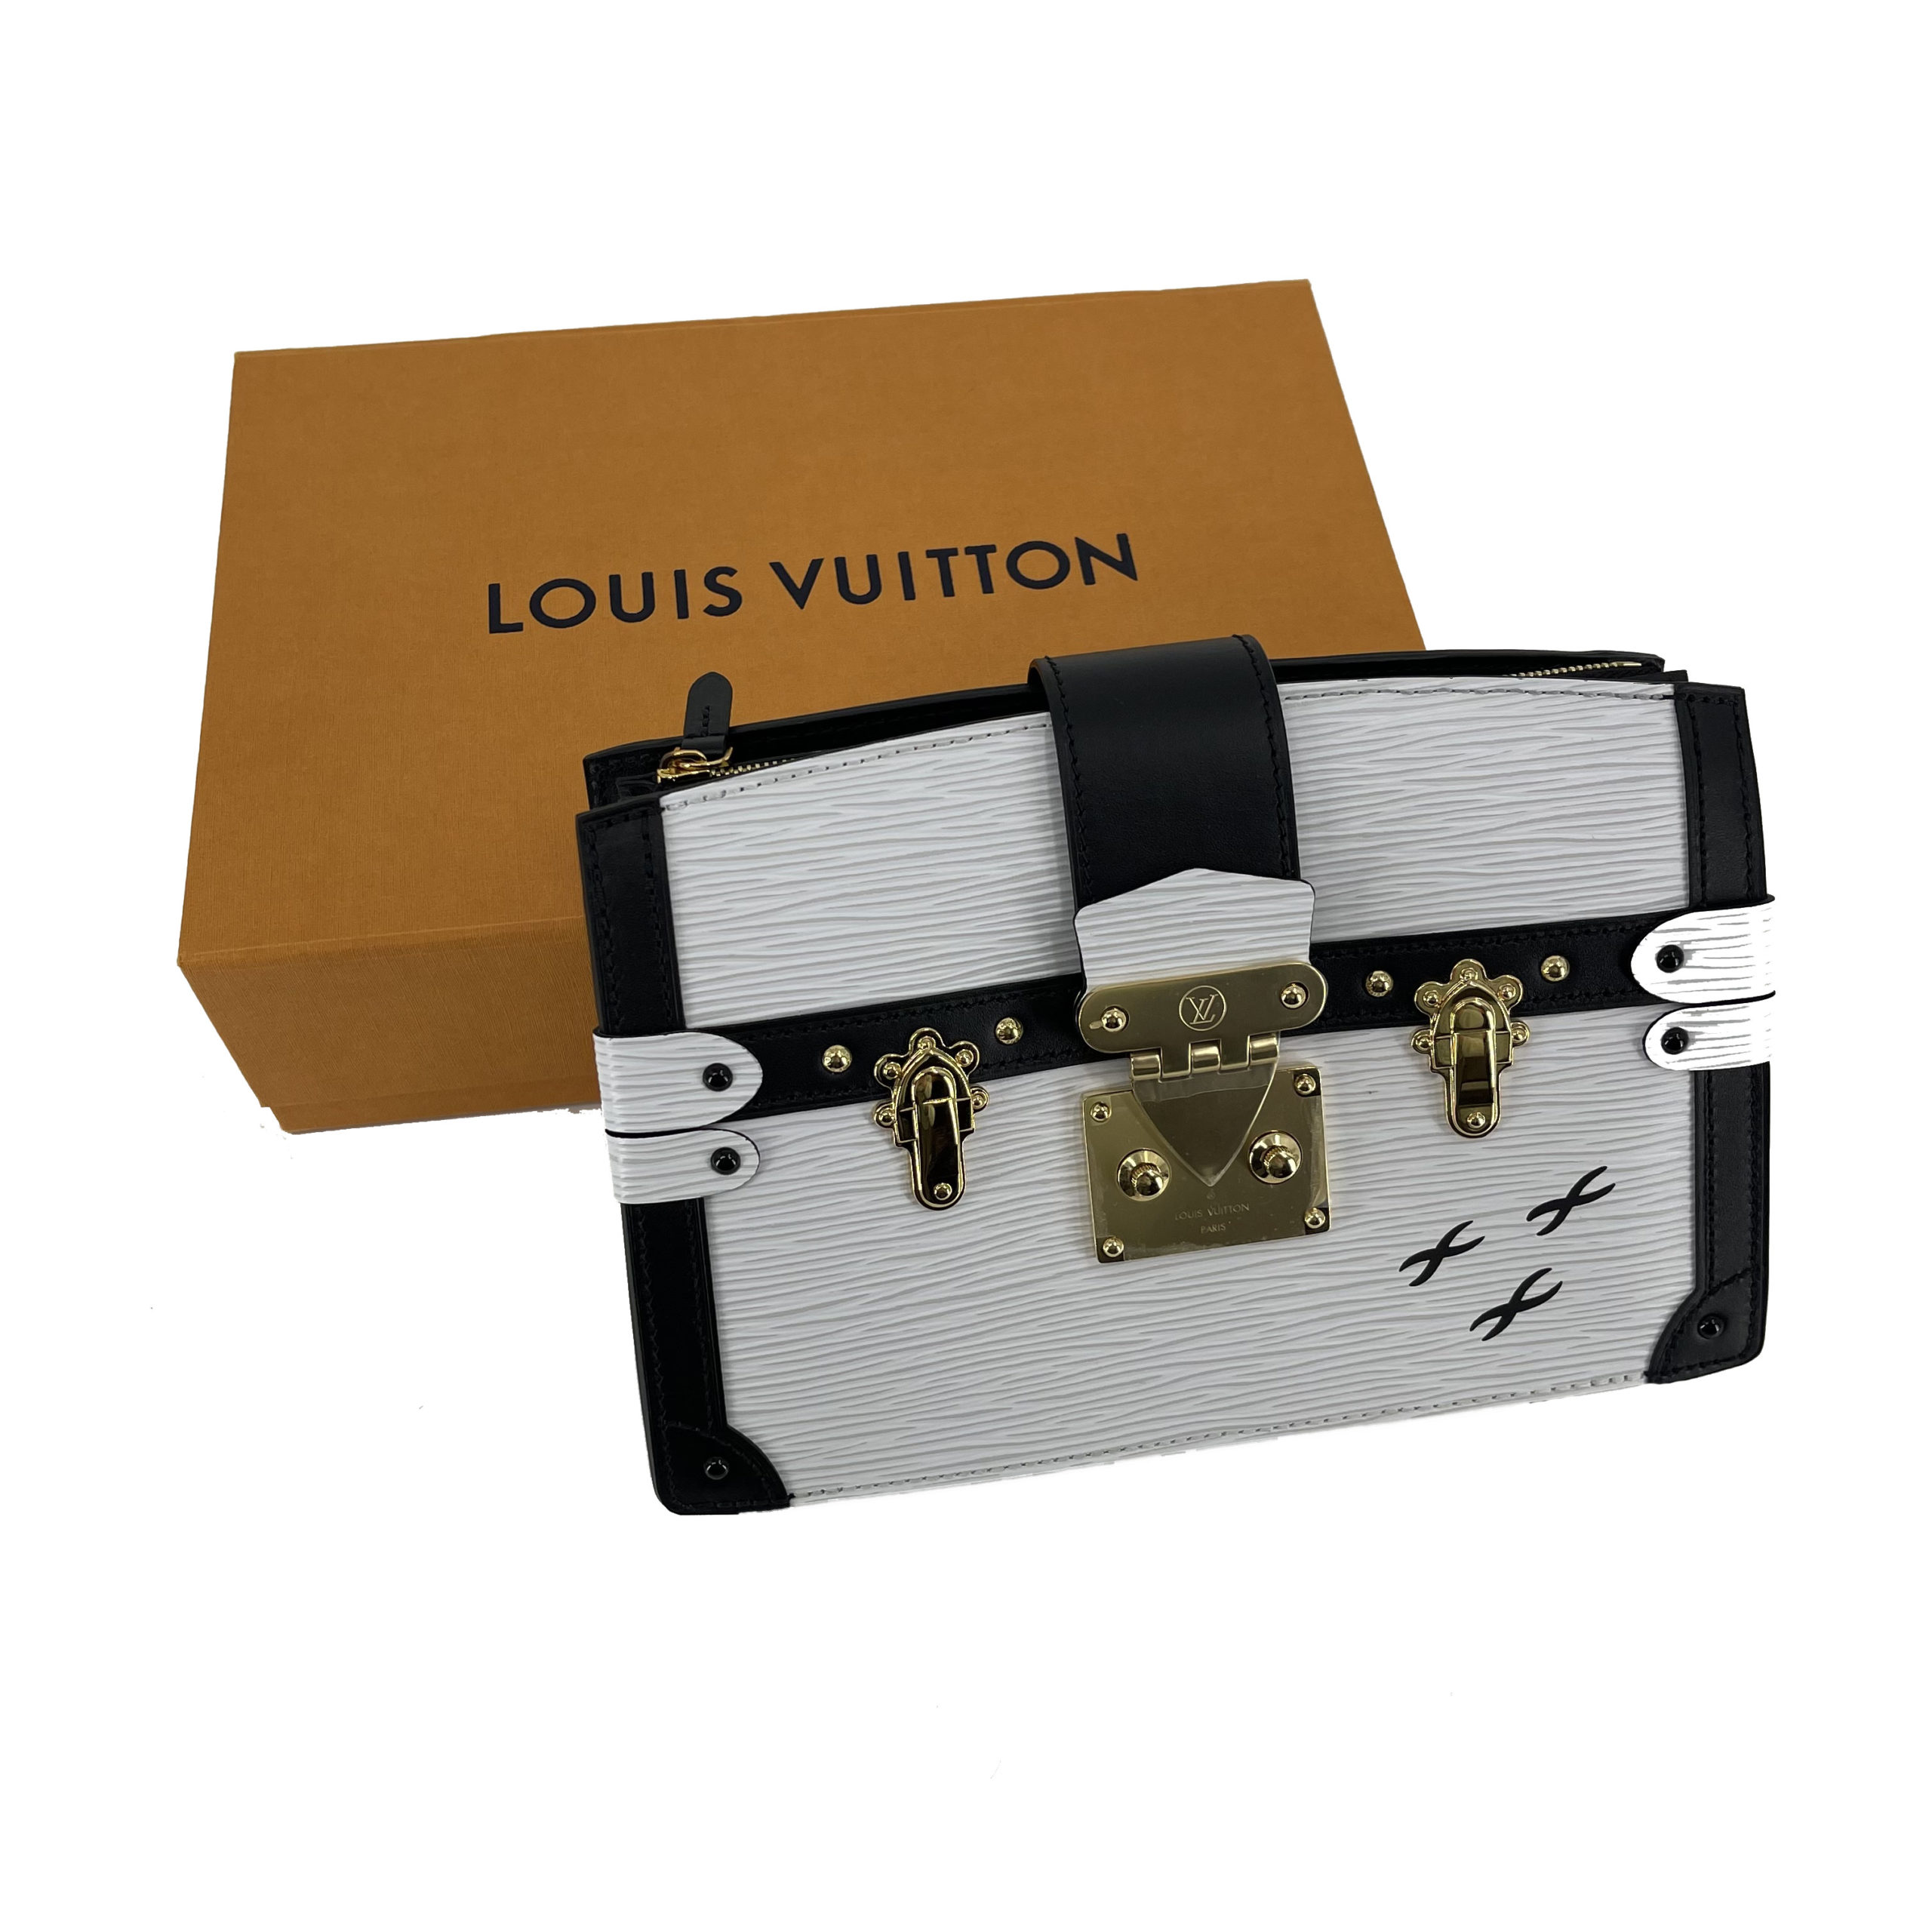 Louis Vuitton Petite Malle Trunk Clutch